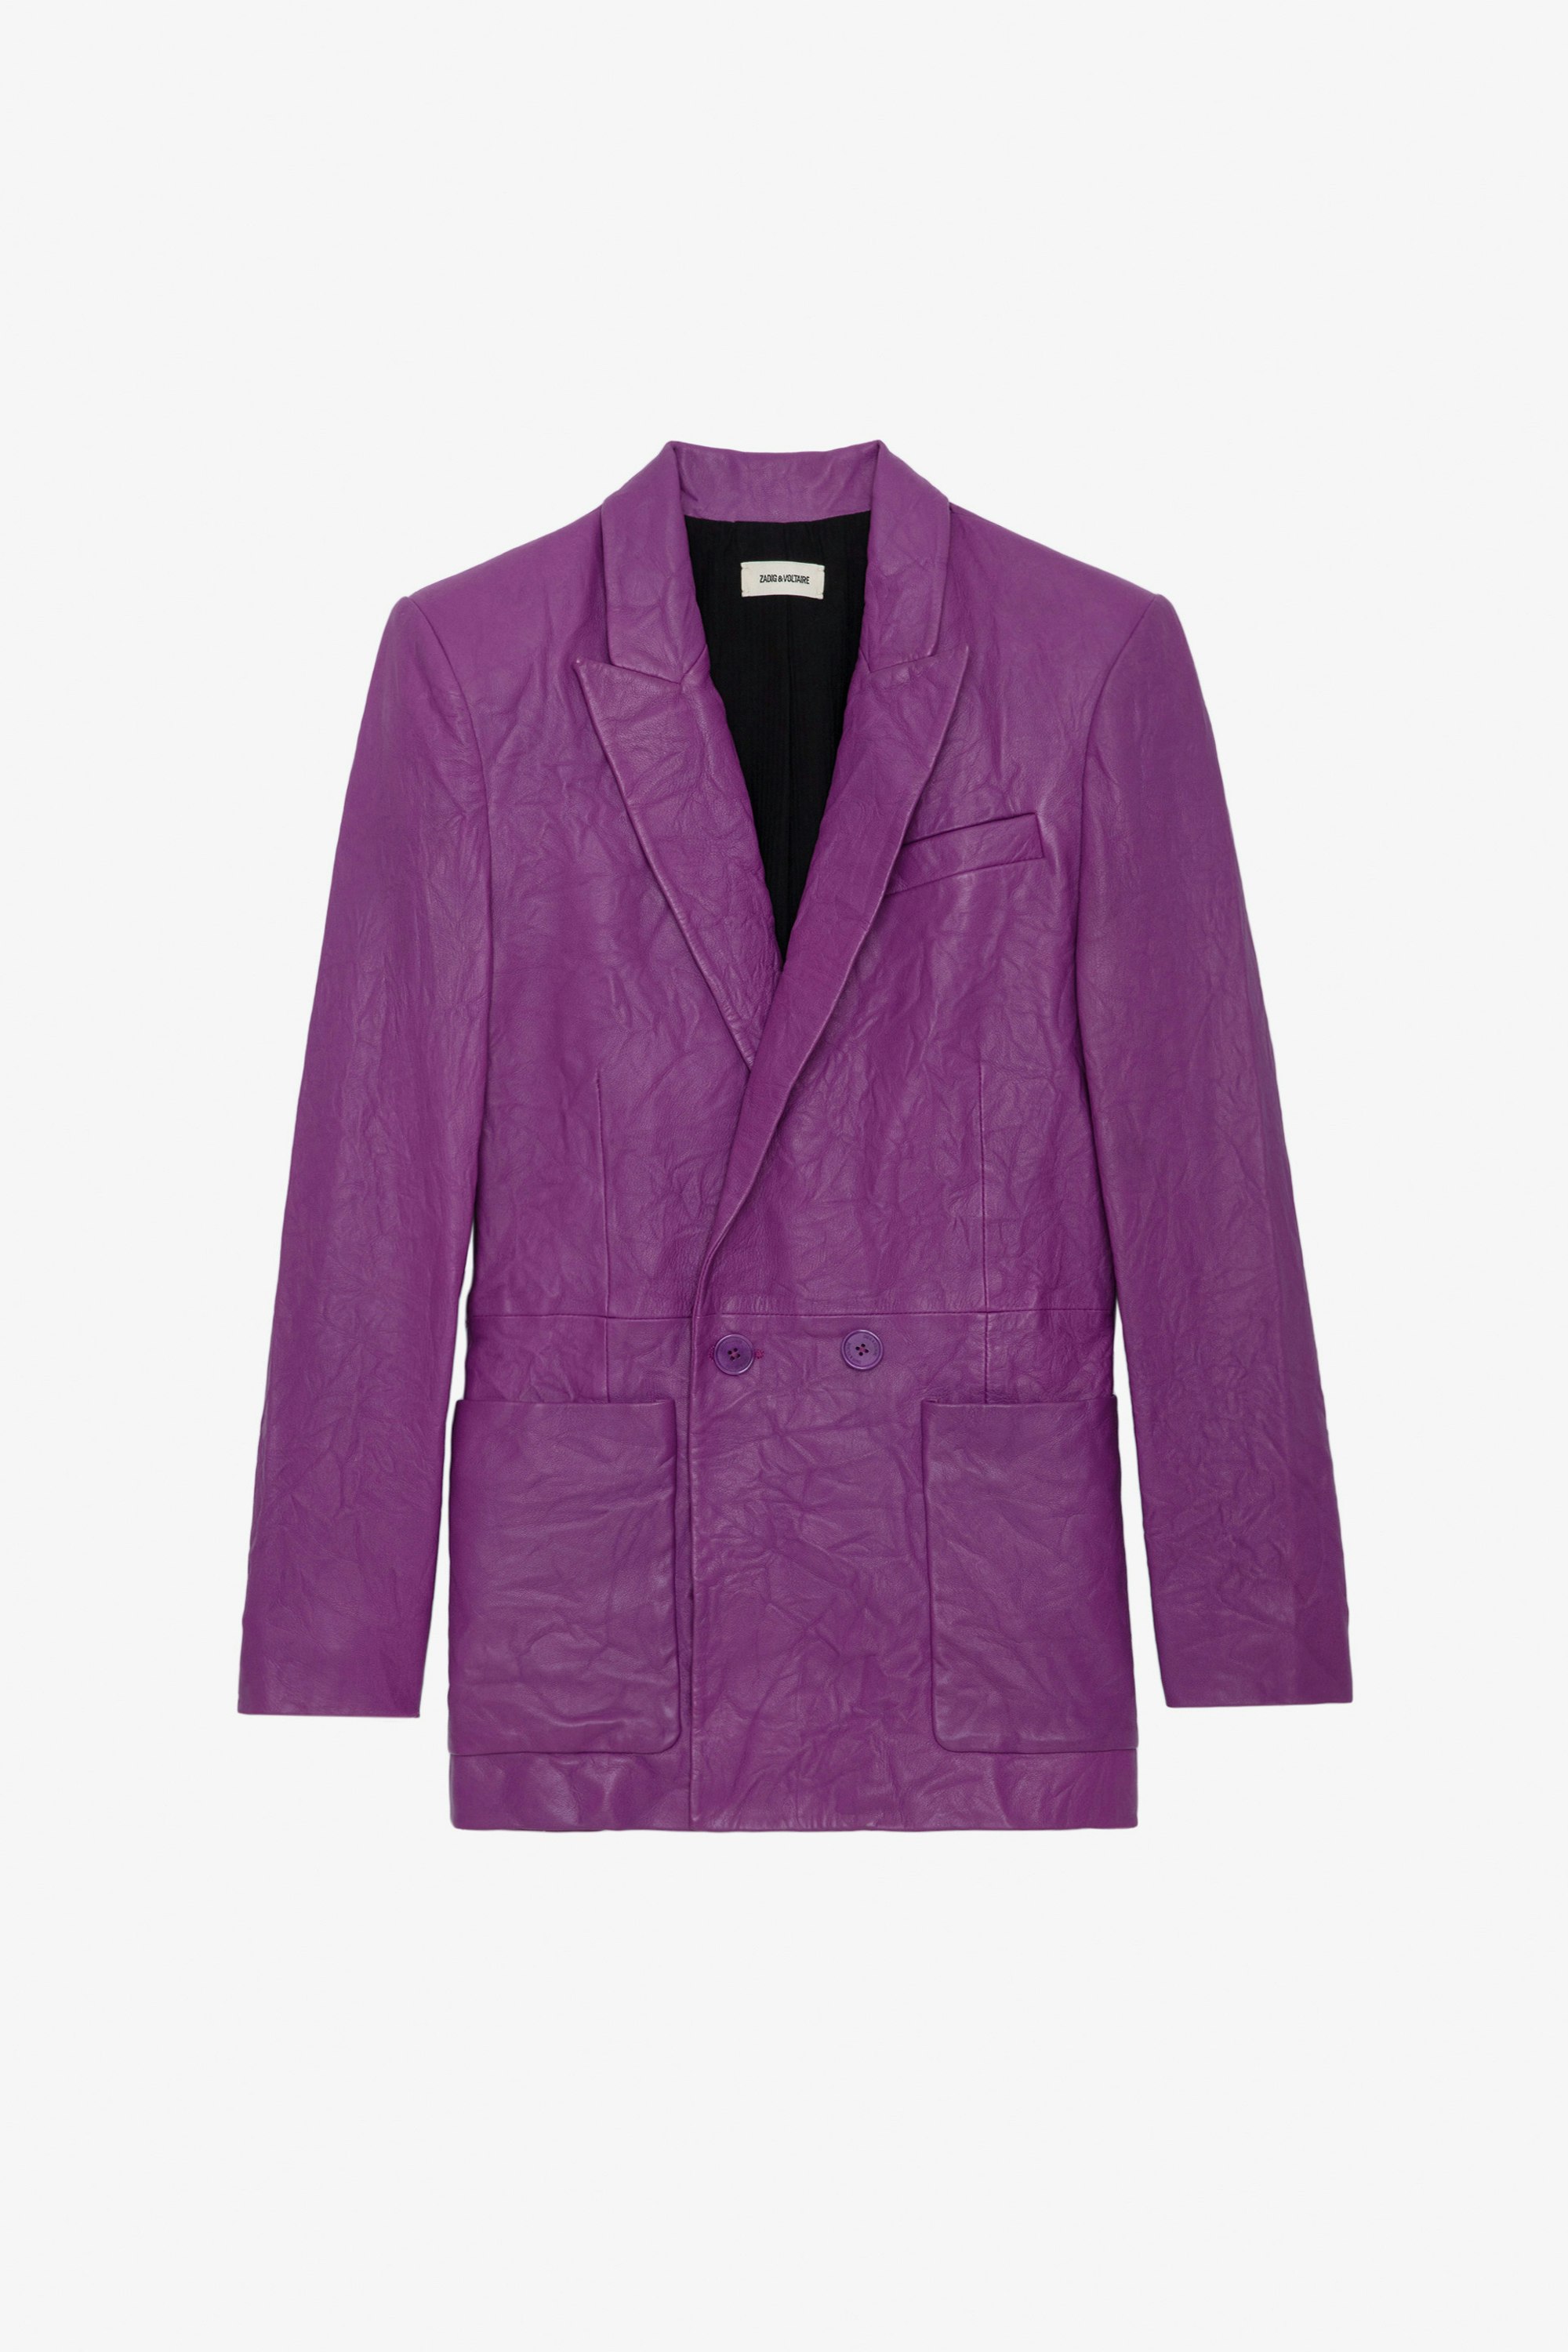 Blazer Visko Cuir Froissé - Veste blazer en cuir froissé violet à fermeture boutonnée et poches.